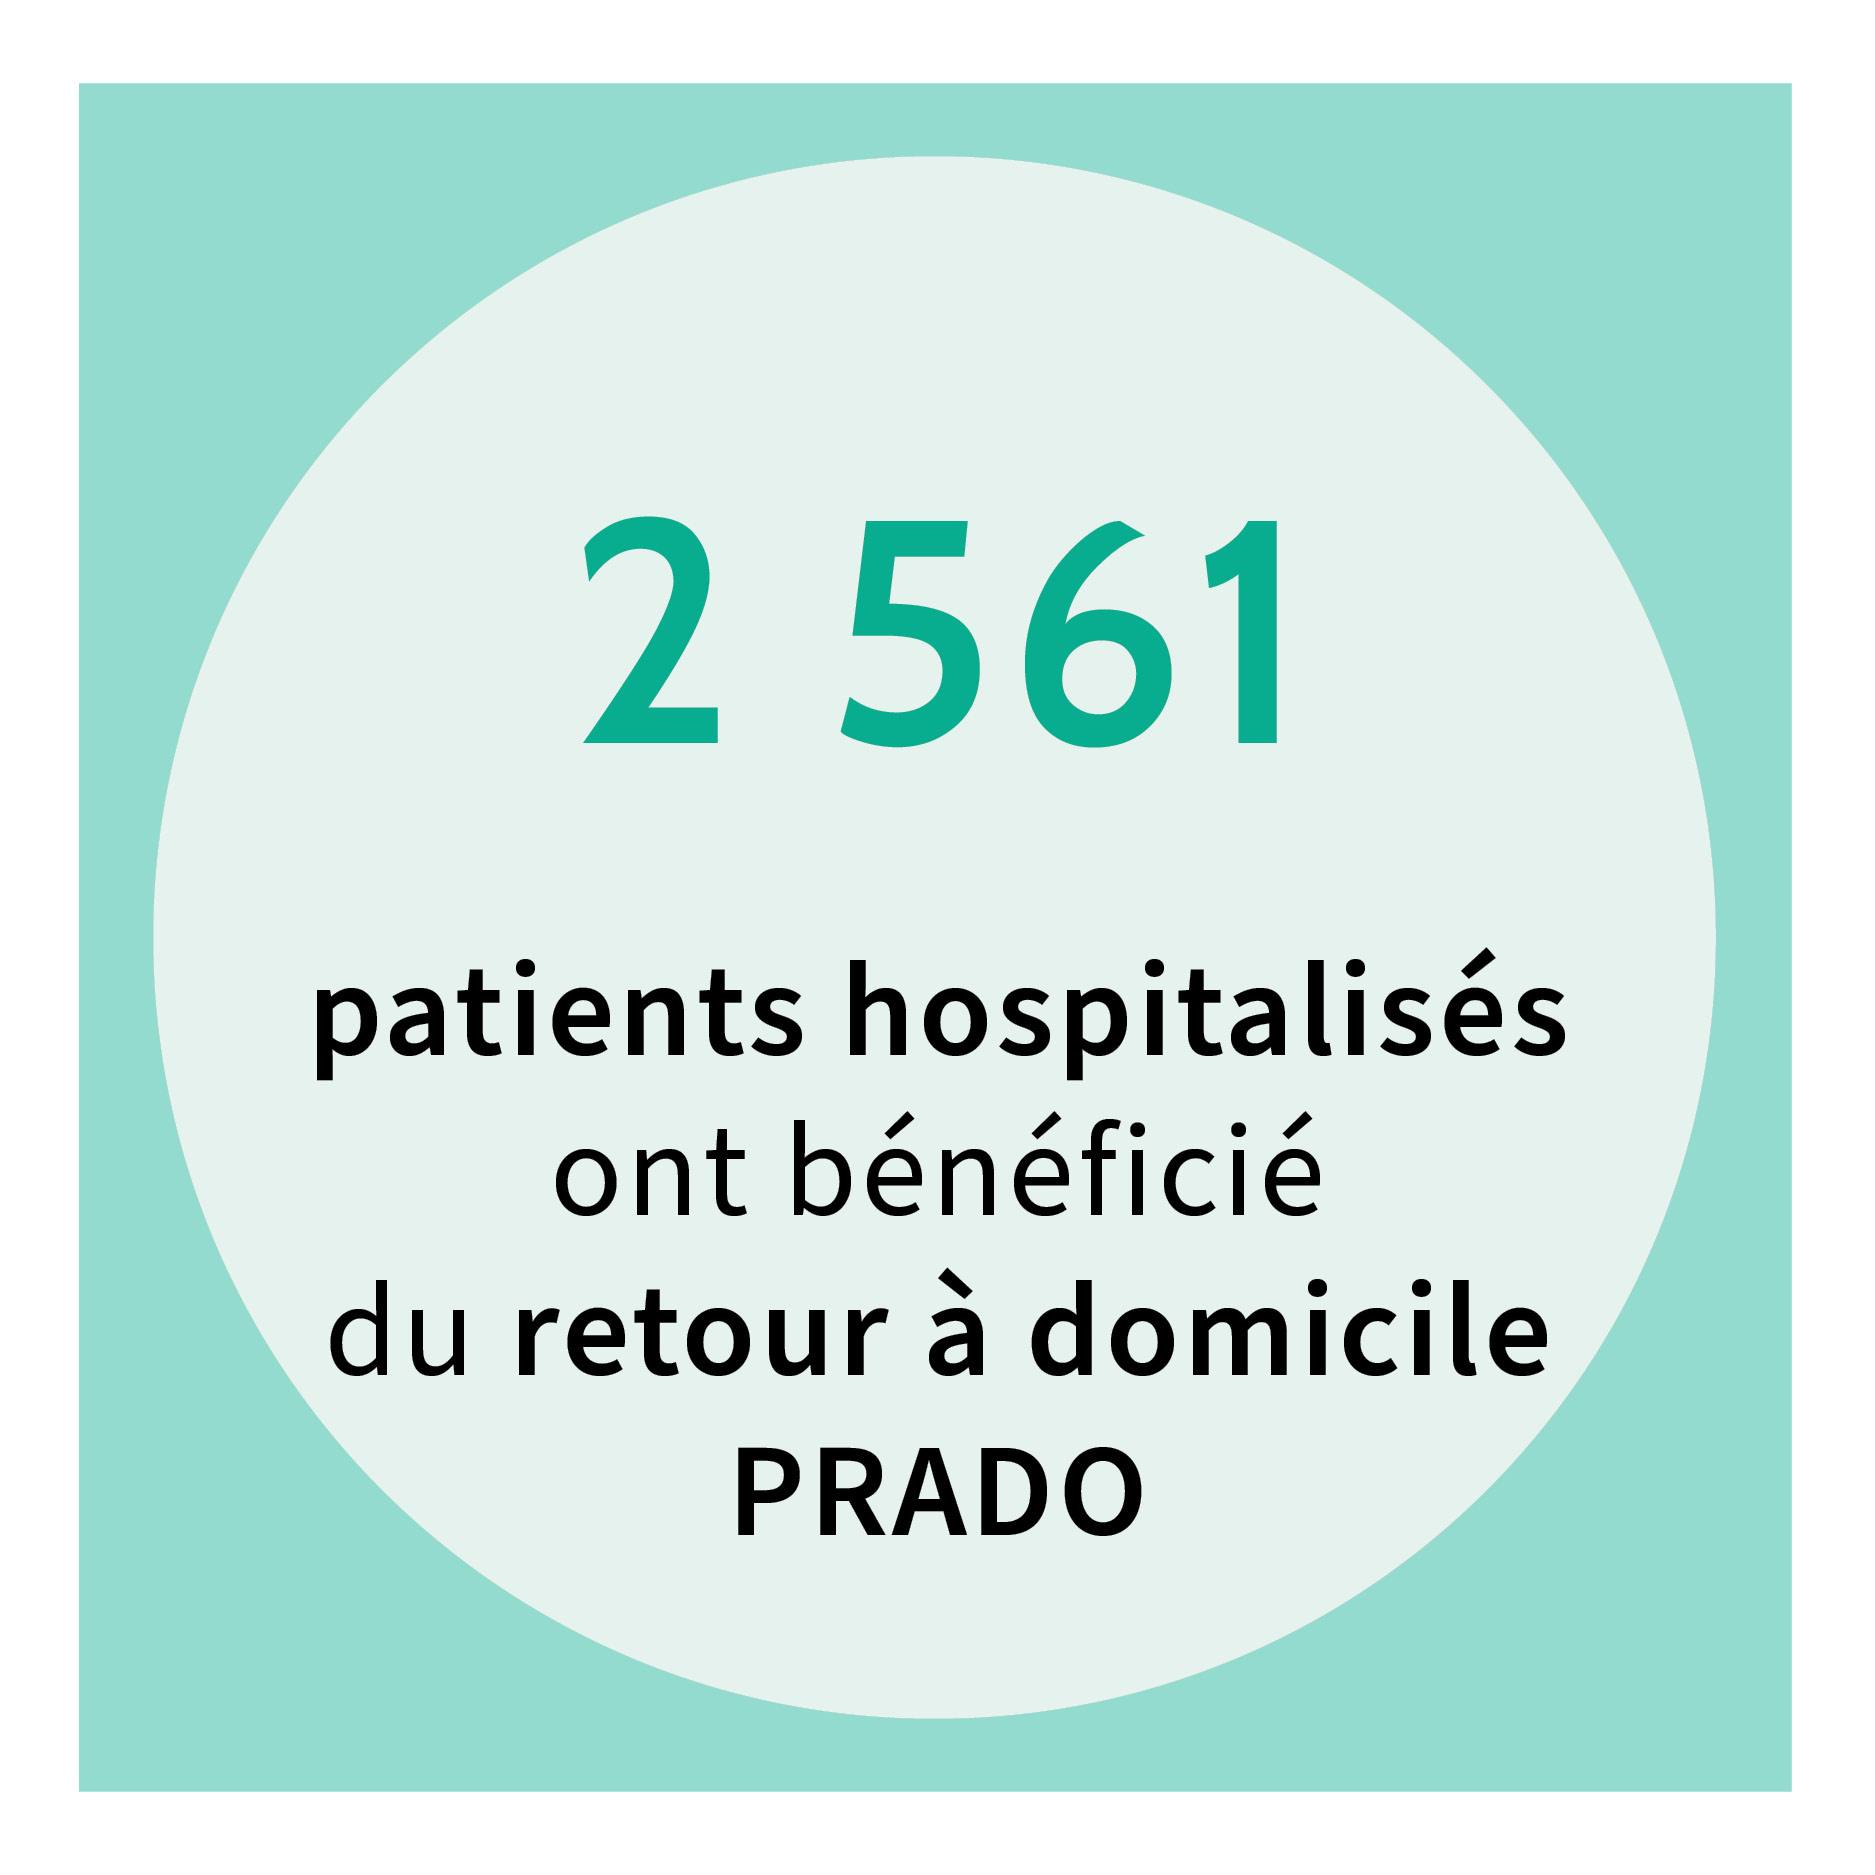 2 561 patients hospitalisés ont bénéficié du retour à domicile PRADO